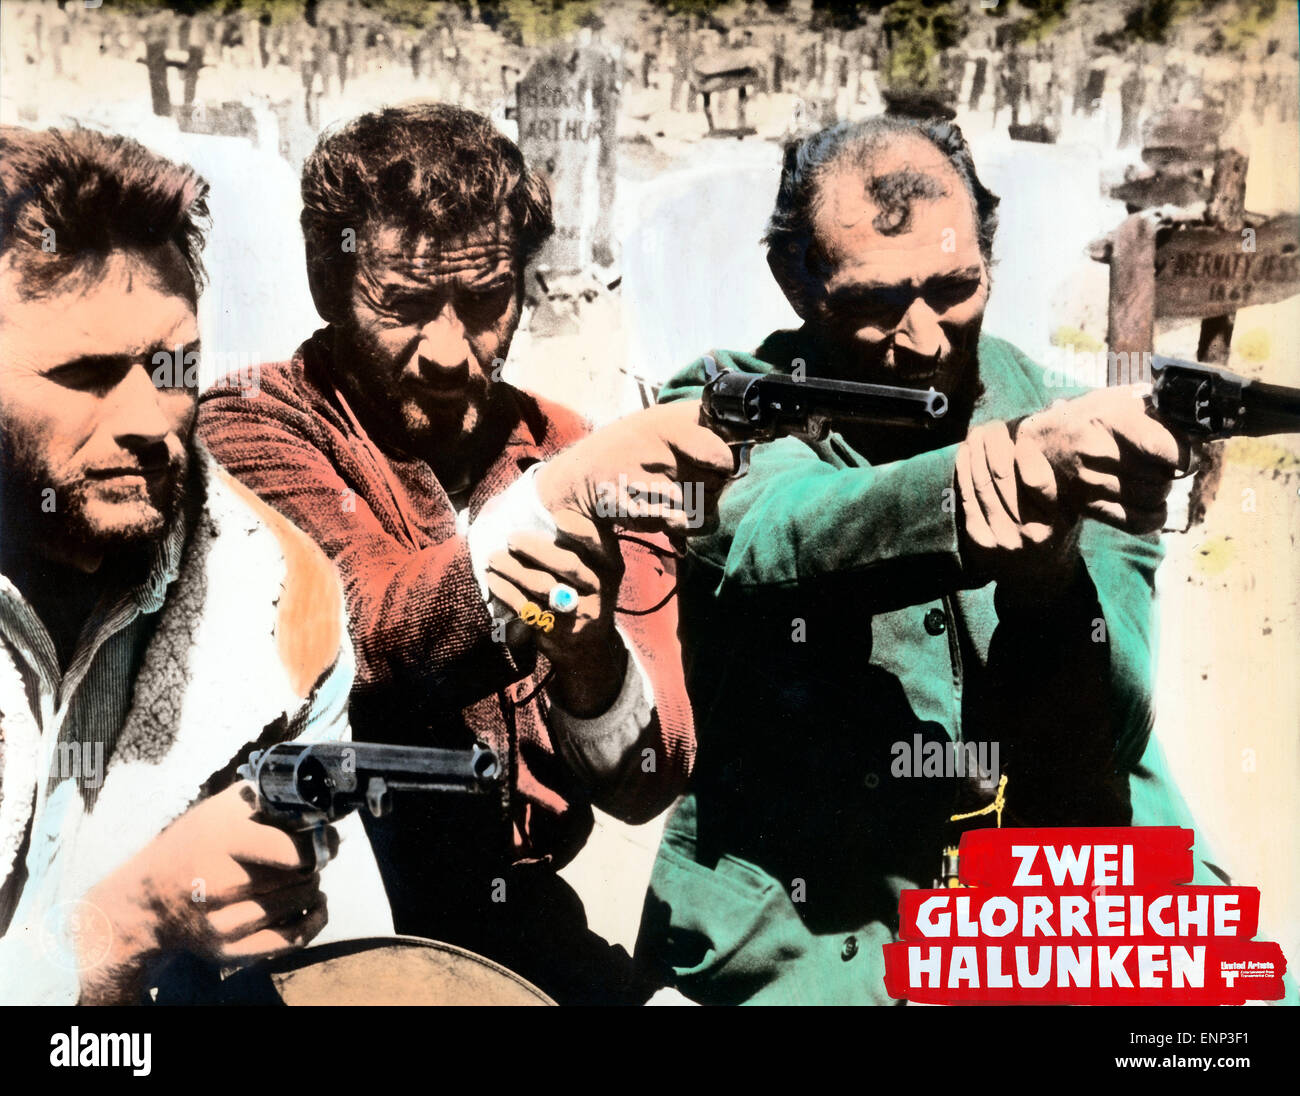 Il buono, il brutto, il cattivo, Italien/Spanien/Deutschland 1966, aka: Zwei glorreiche Halunken, Regie: Sergio Leone, Darstelle Stock Photo